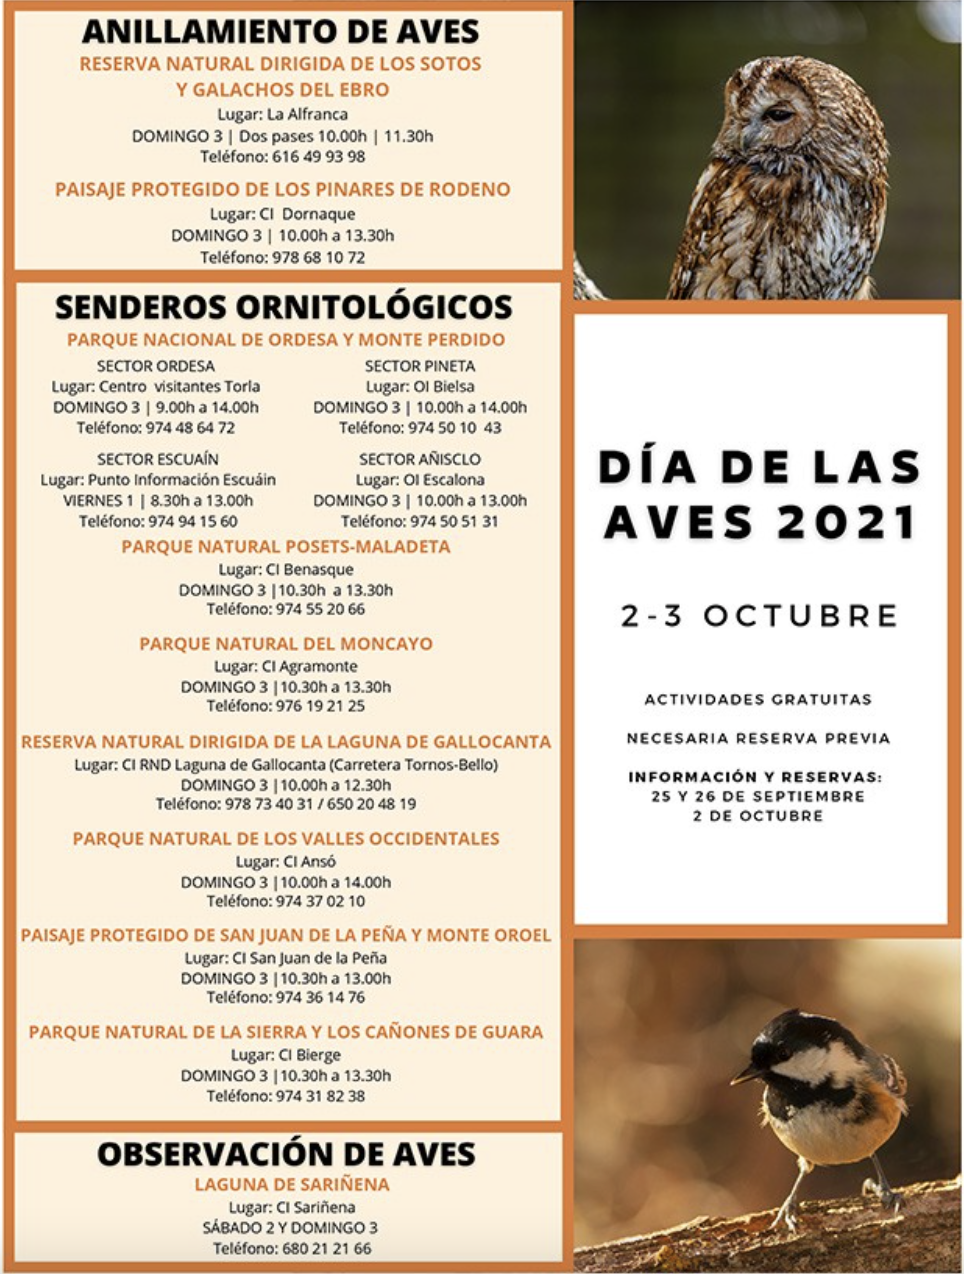 DÍA DE LAS AVES 2021. Sendero ornitológico en la Sierra de Guara